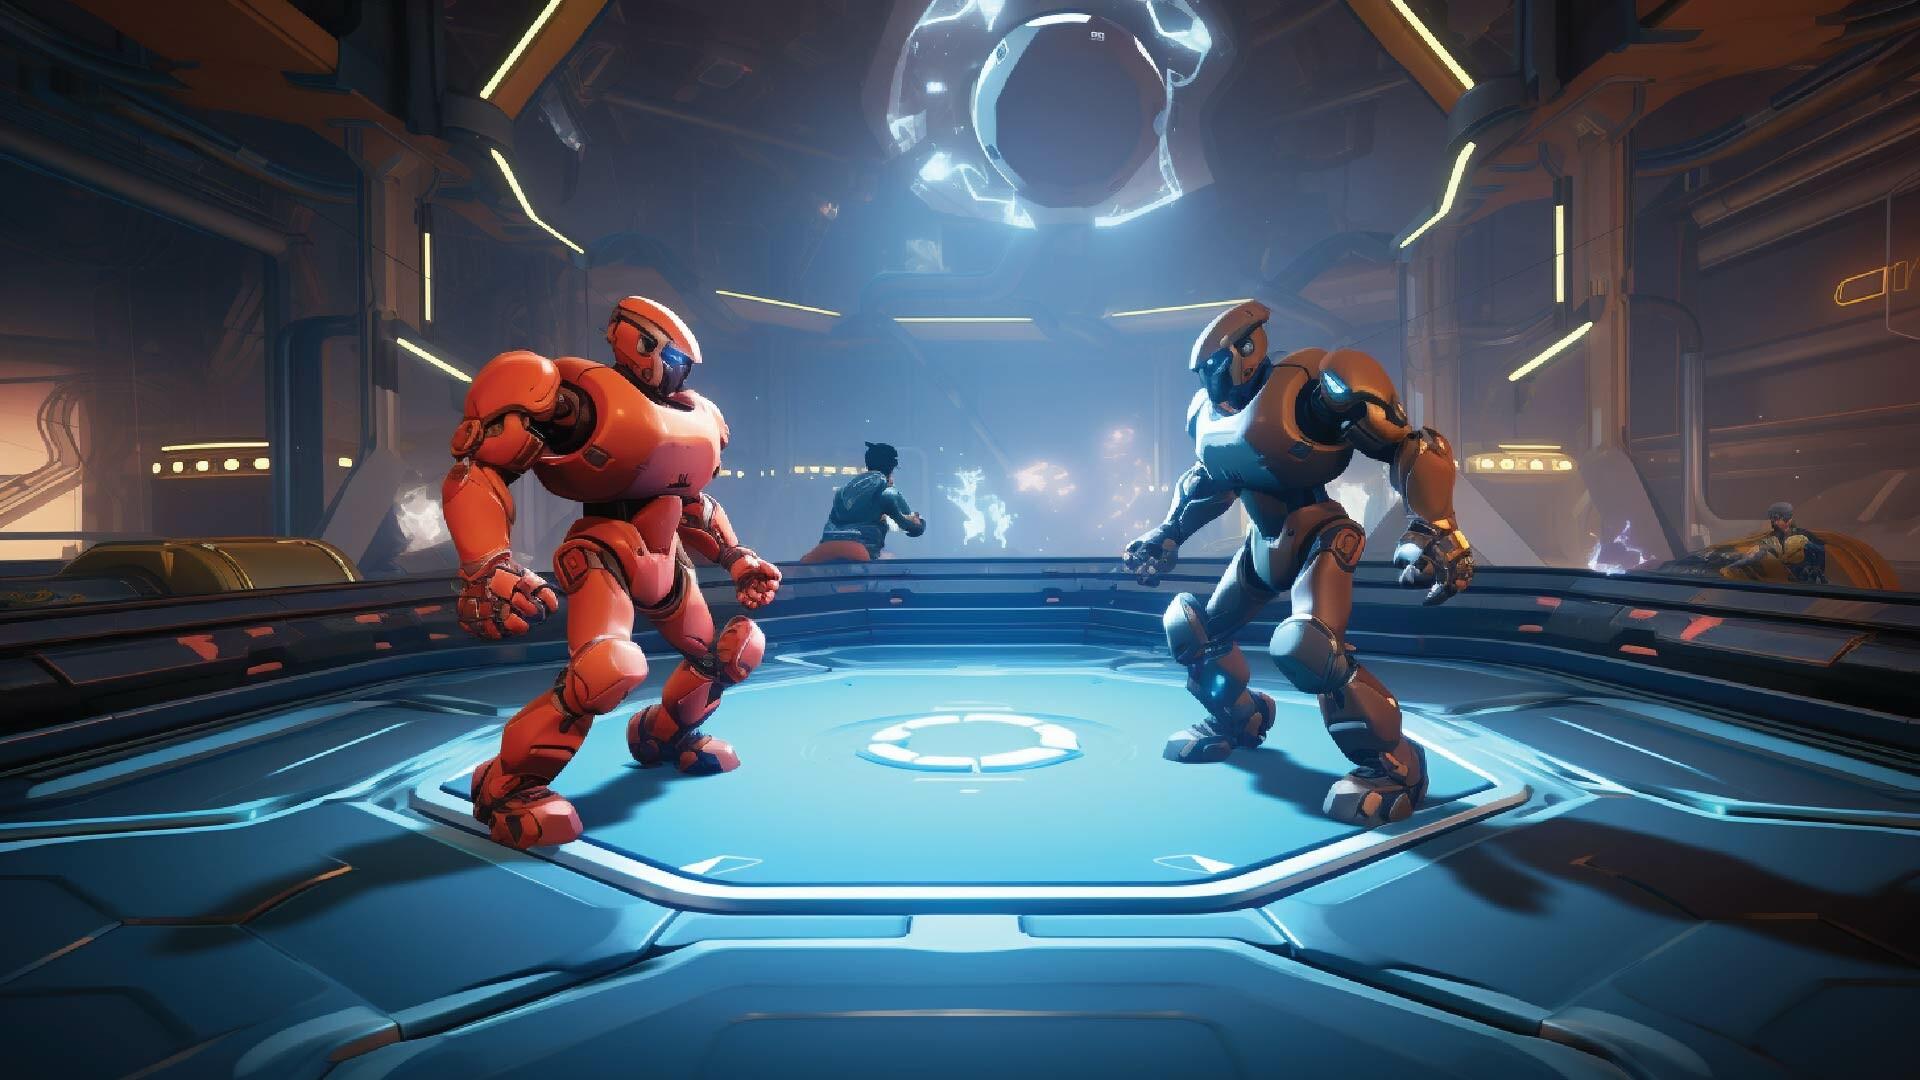 Screenshot 1 of Arena RoboWarrior 